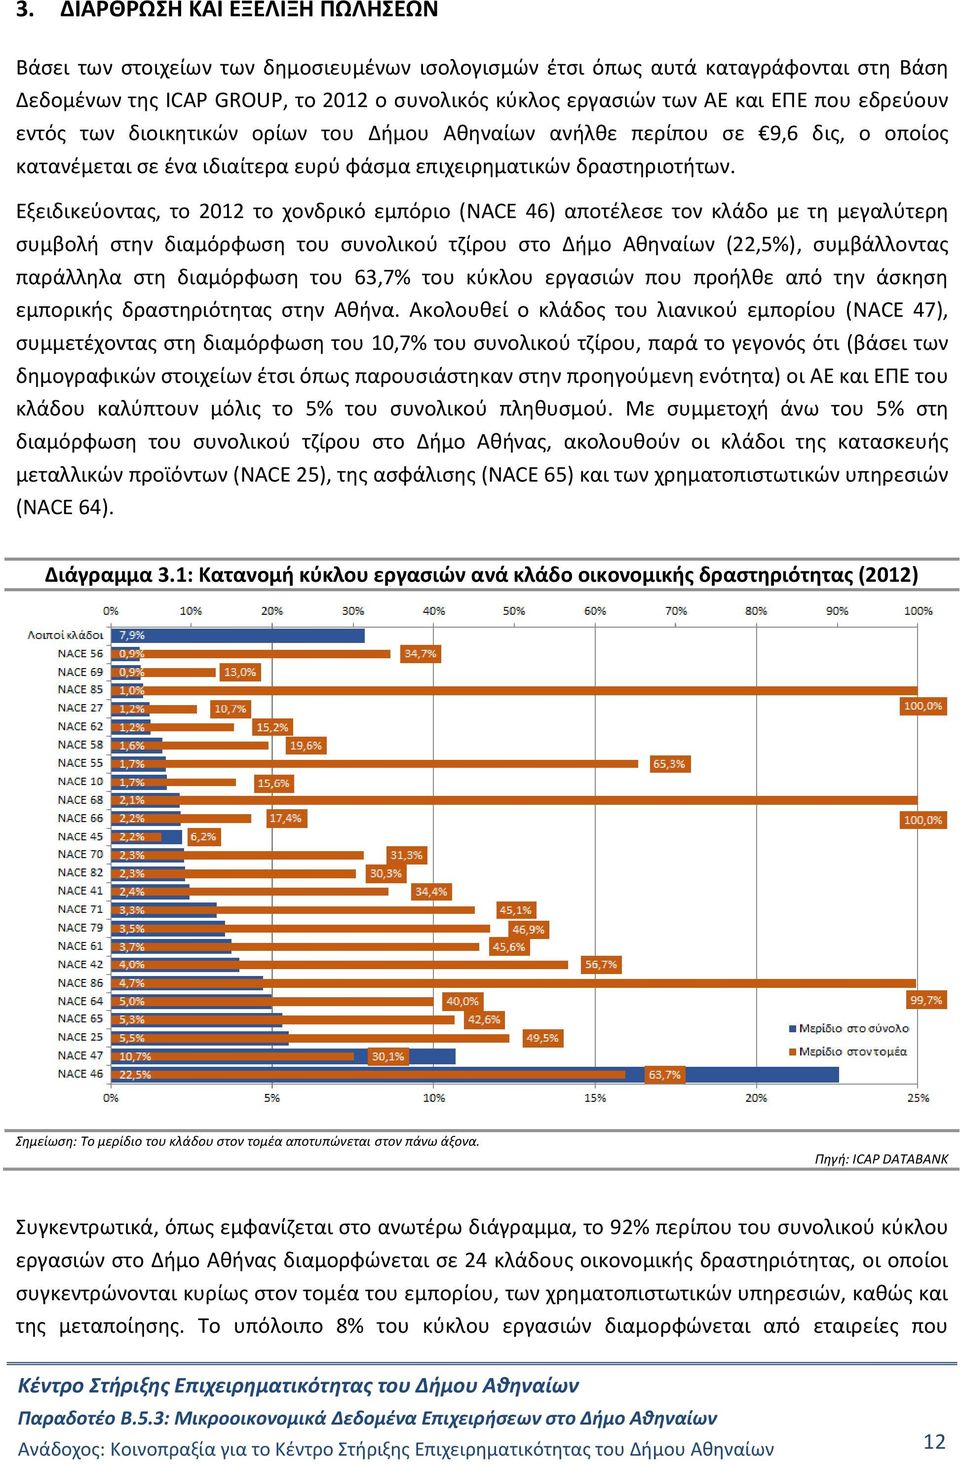 Εξειδικεύοντας, το 2012 το χονδρικό εμπόριο (NACE 46) αποτέλεσε τον κλάδο με τη μεγαλύτερη συμβολή στην διαμόρφωση του συνολικού τζίρου στο Δήμο Αθηναίων (22,5%), συμβάλλοντας παράλληλα στη